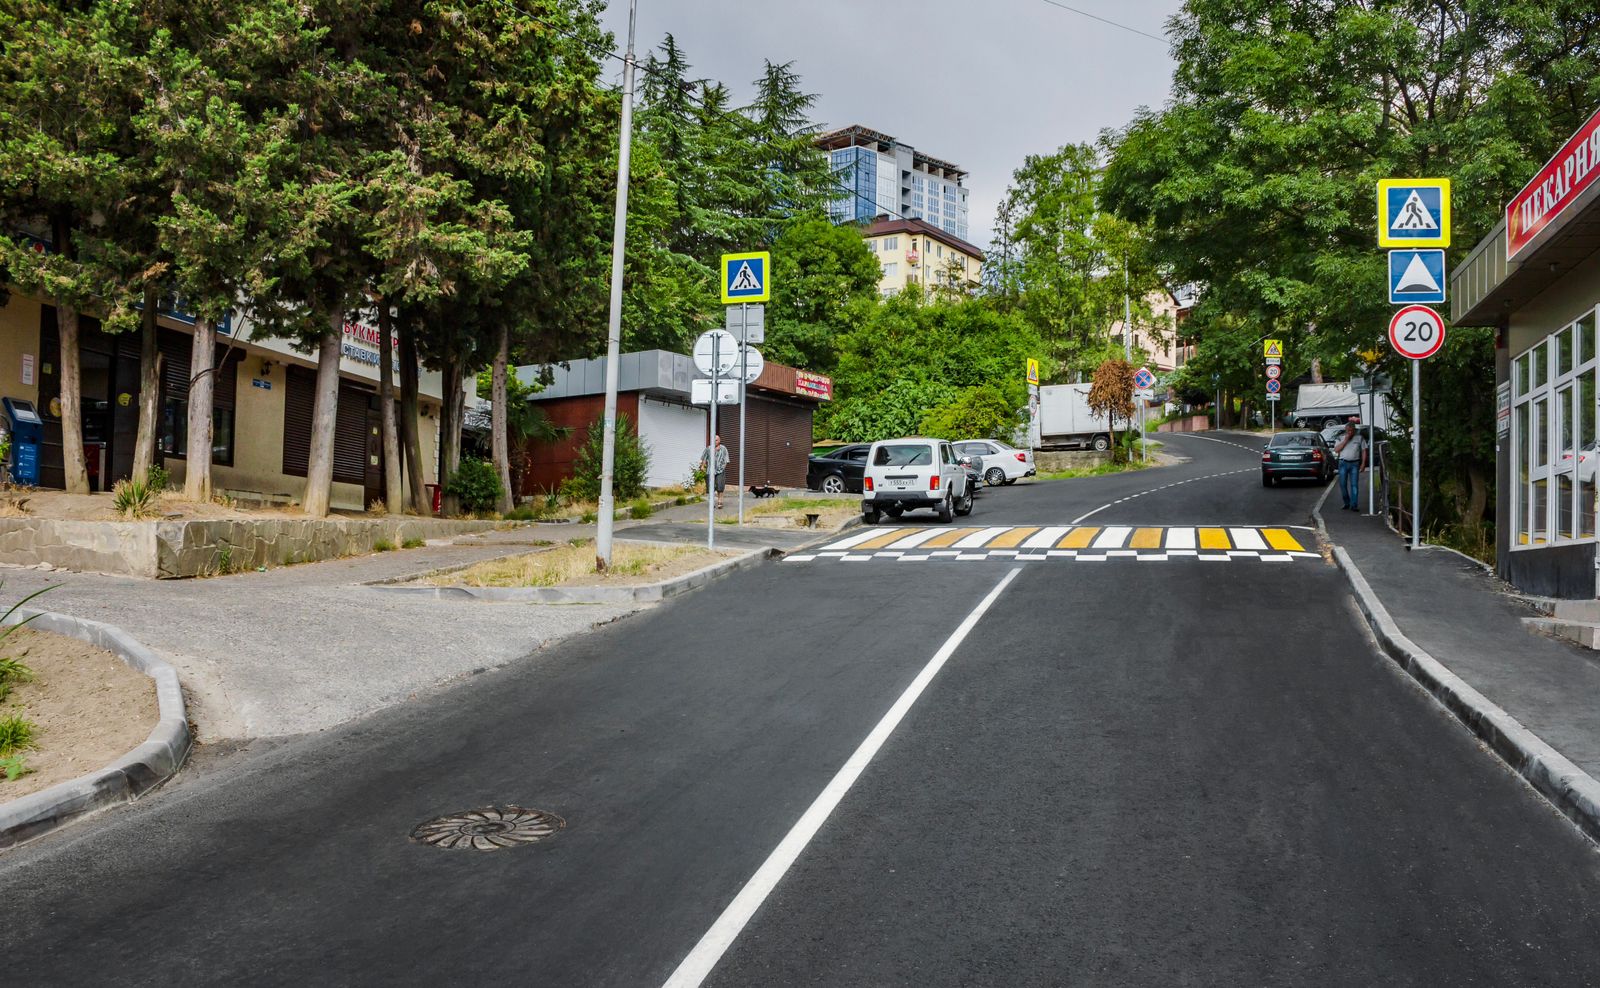  В Сочи работы по нацпроекту «Безопасные качественные дороги» ведутся в соответствии с требованиями доступной среды